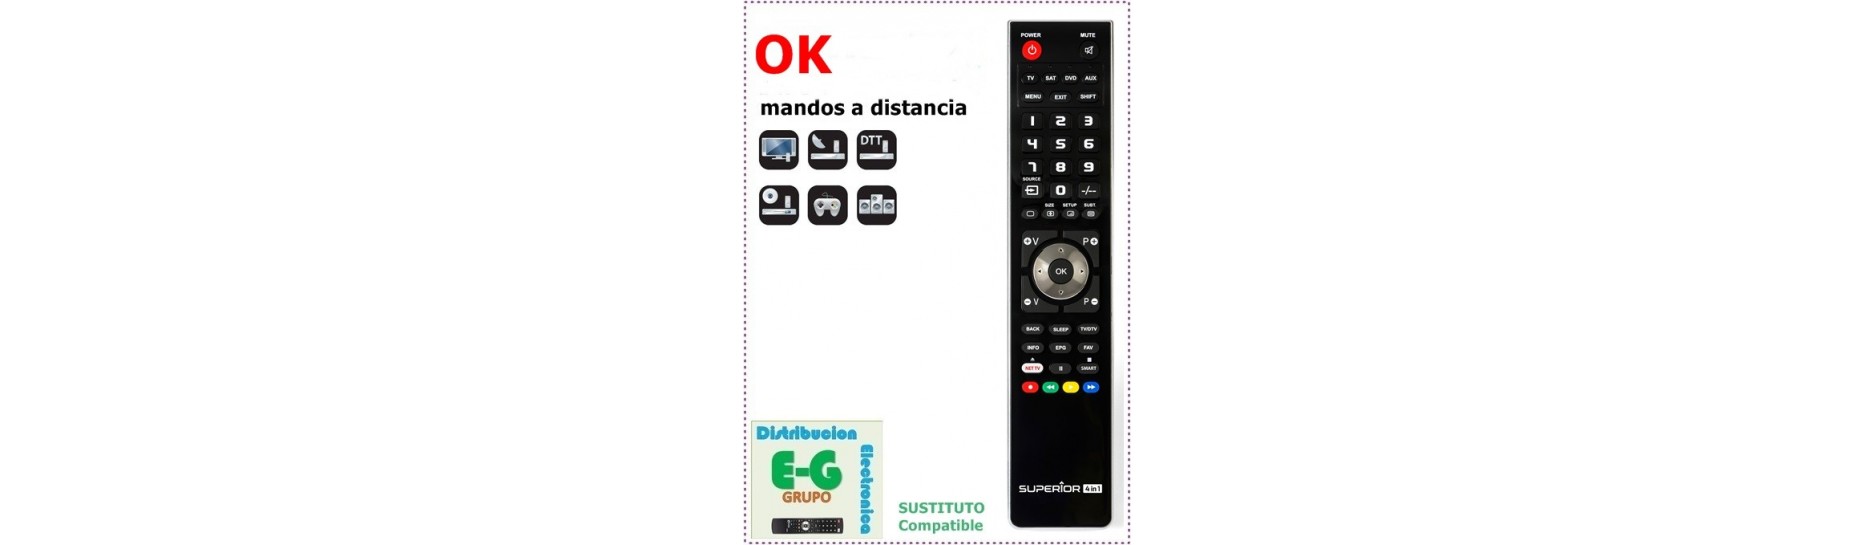 Mando para Televisión OK | Comprar Mando para Televisión OK